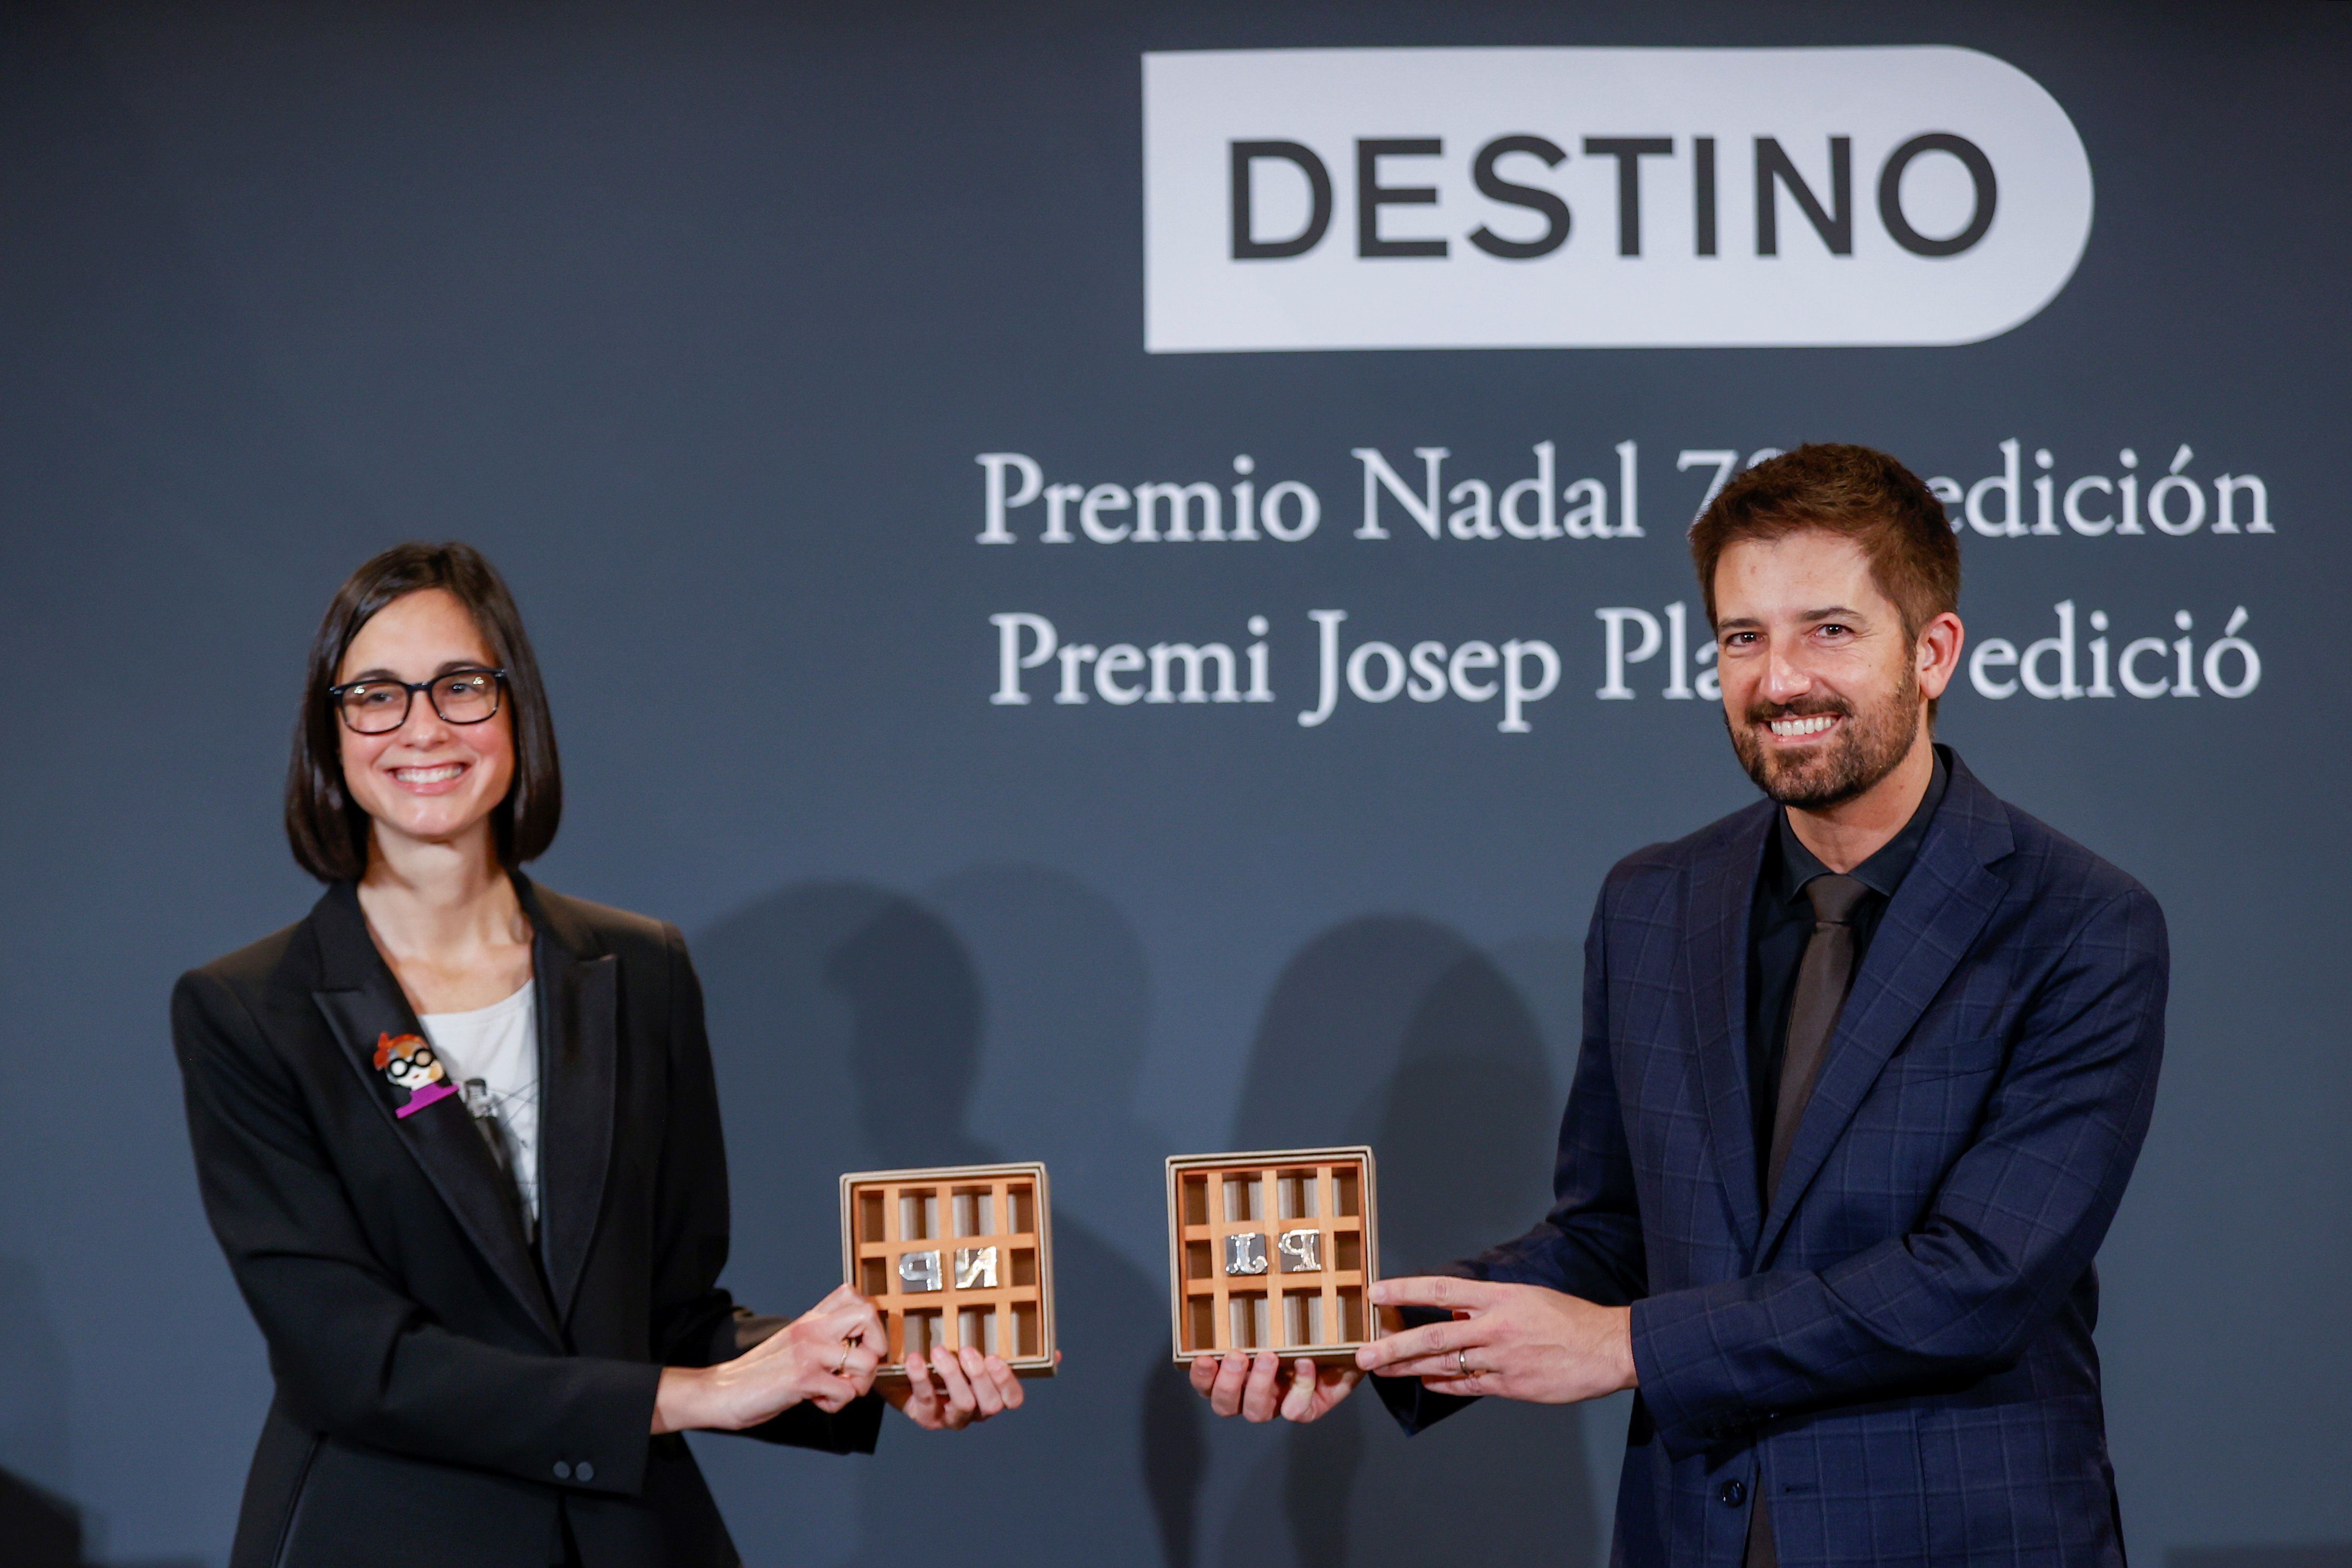 Inés Martín Rodrigo y Toni Cruanyes posan con sus premios Nadal y Josep Pla, respectivamente, el pasado 6 de enero.